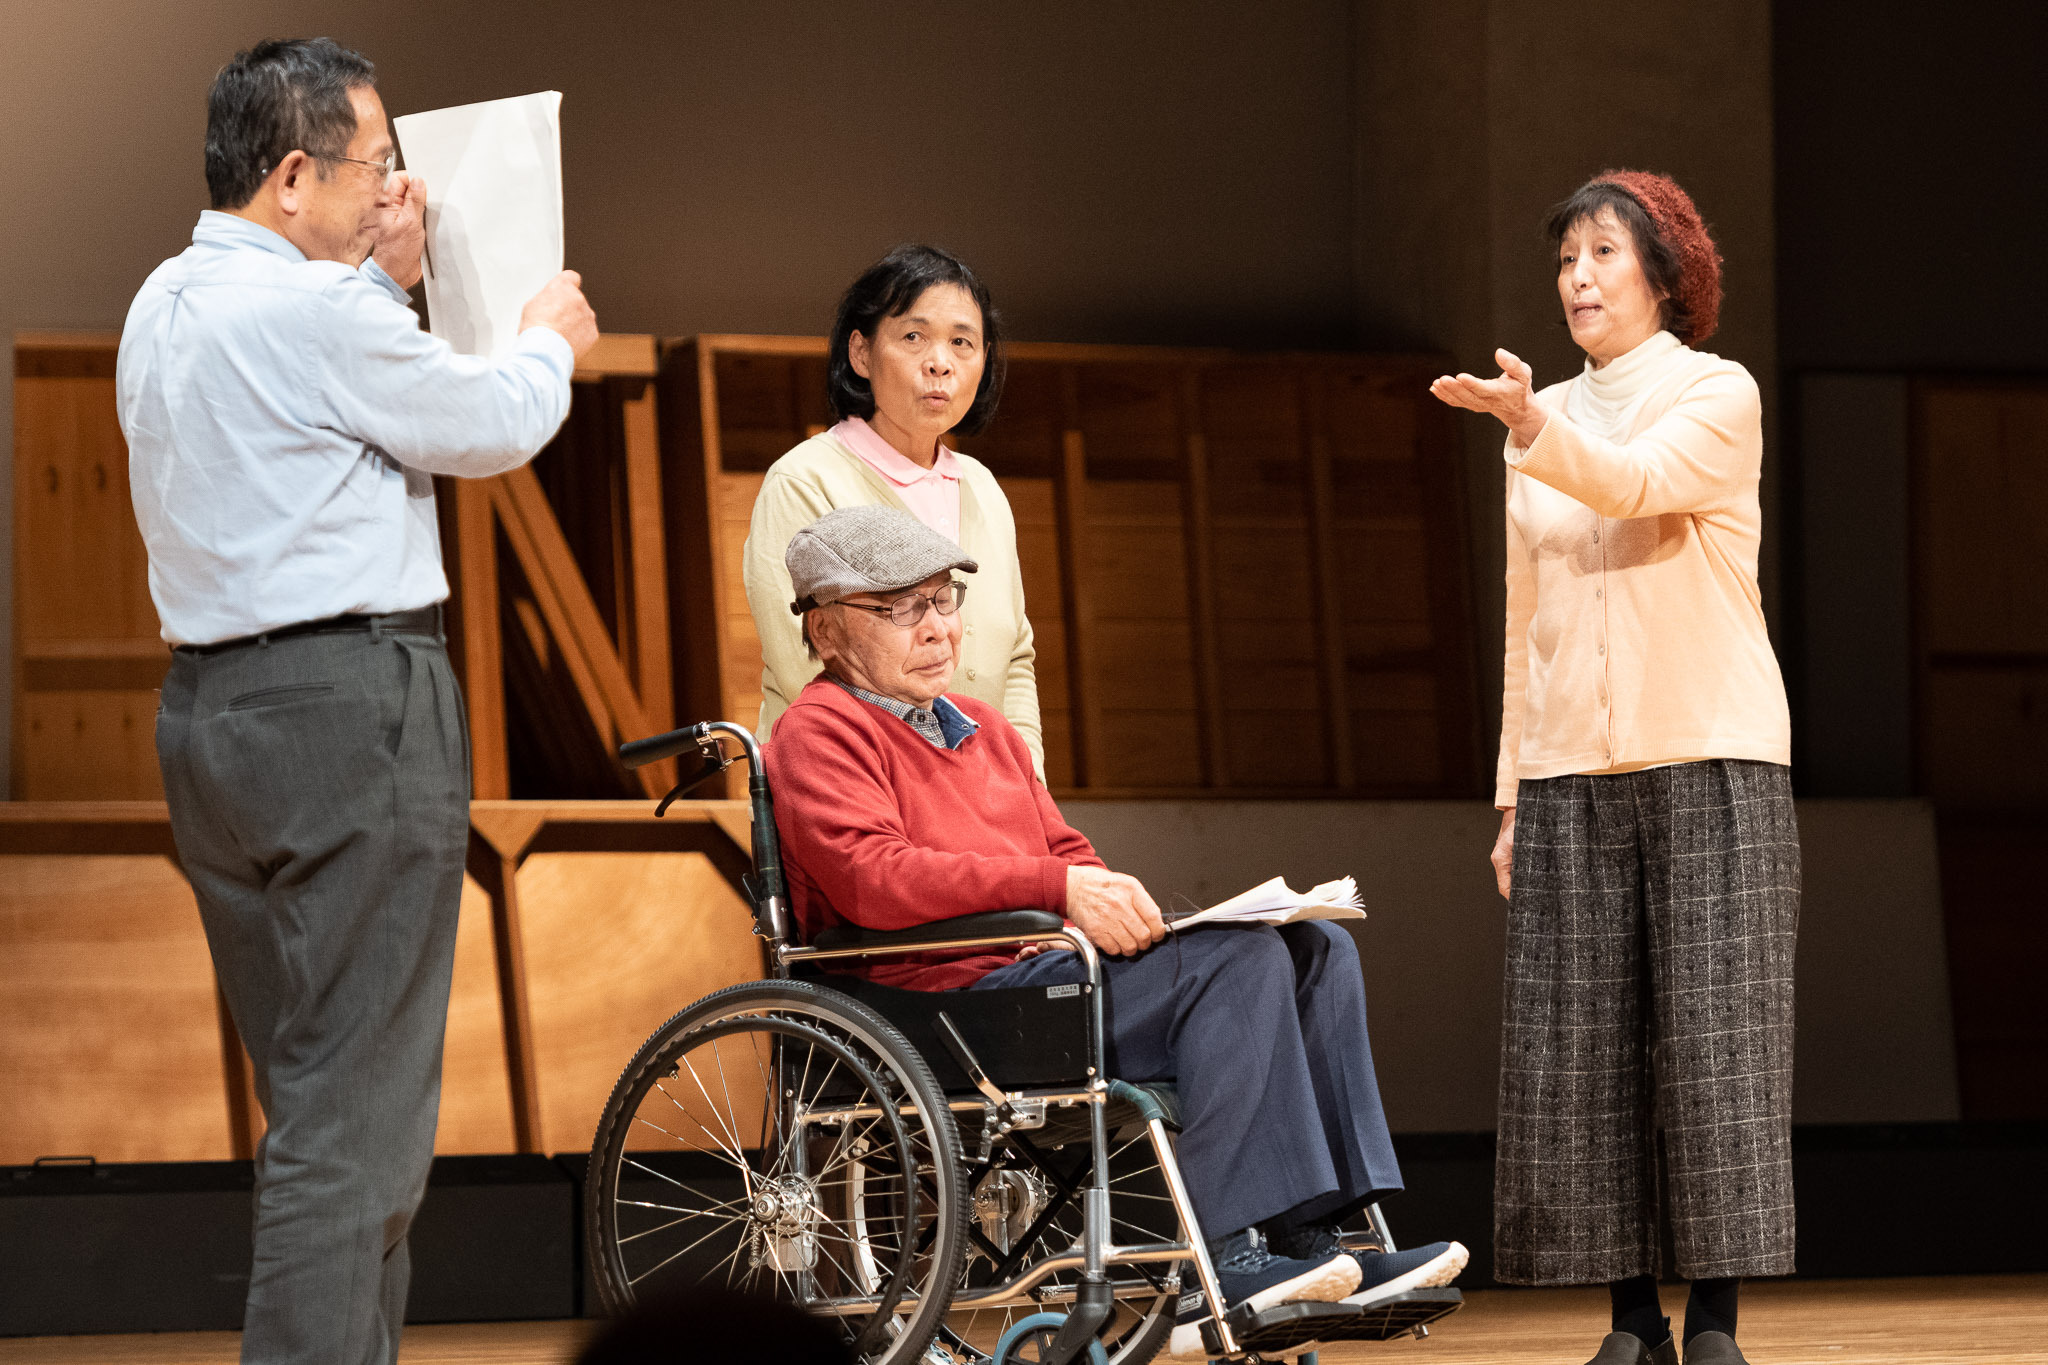 岡山芸術創造劇場 ハレノワ 開館事業として、岡山・三重にて
「老い」が楽しみになる演劇作品を2024年3月に上演